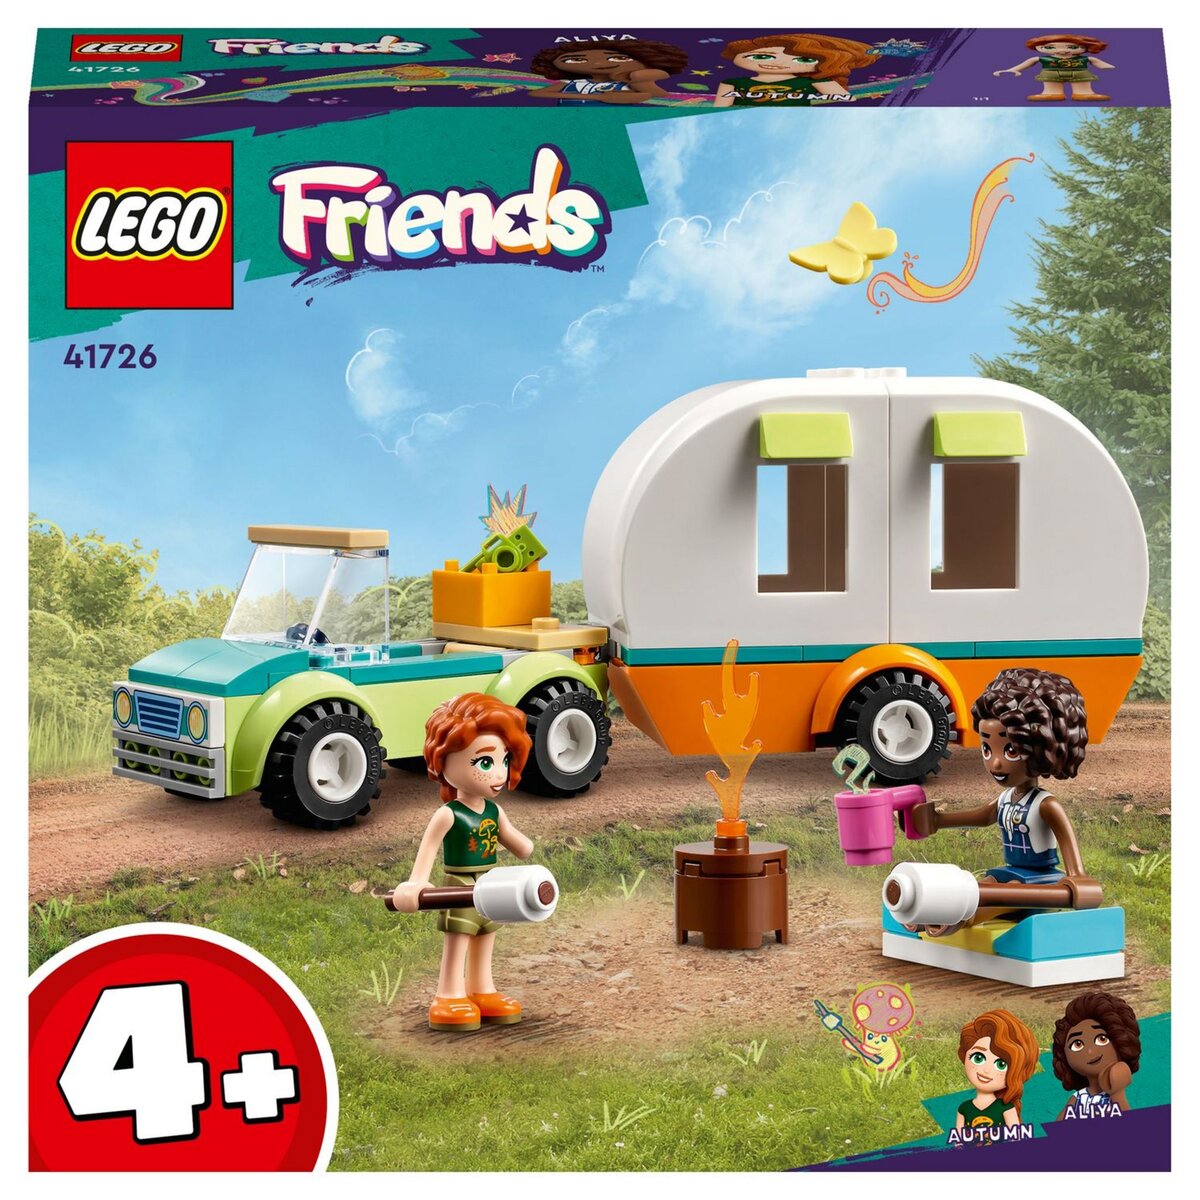 2 jeux Lego friends fille 5 à 12 ans